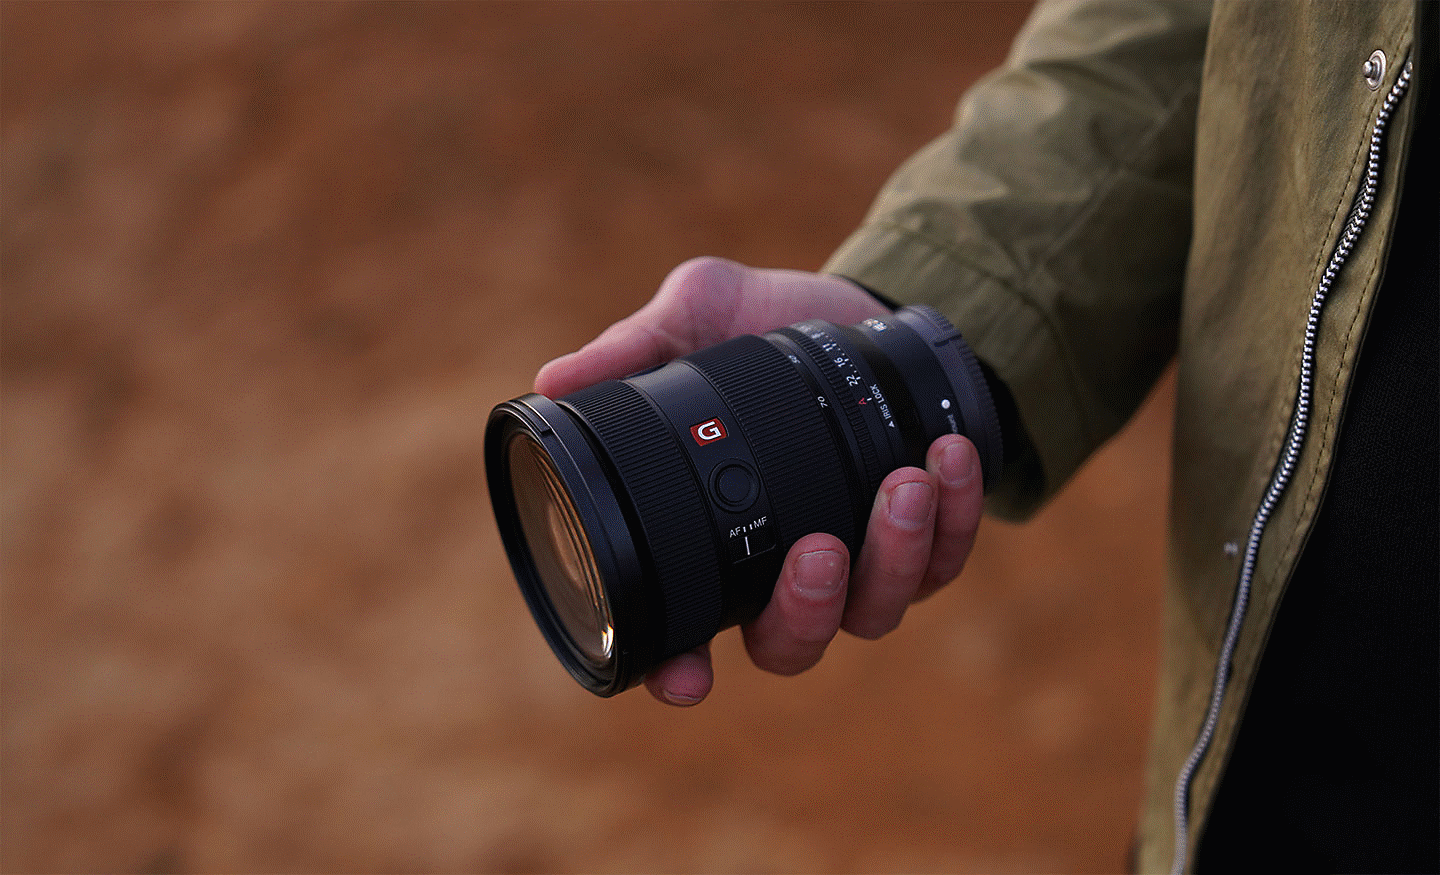 Obrázok objektívu SEL2470GM2 držaného v pravej ruke